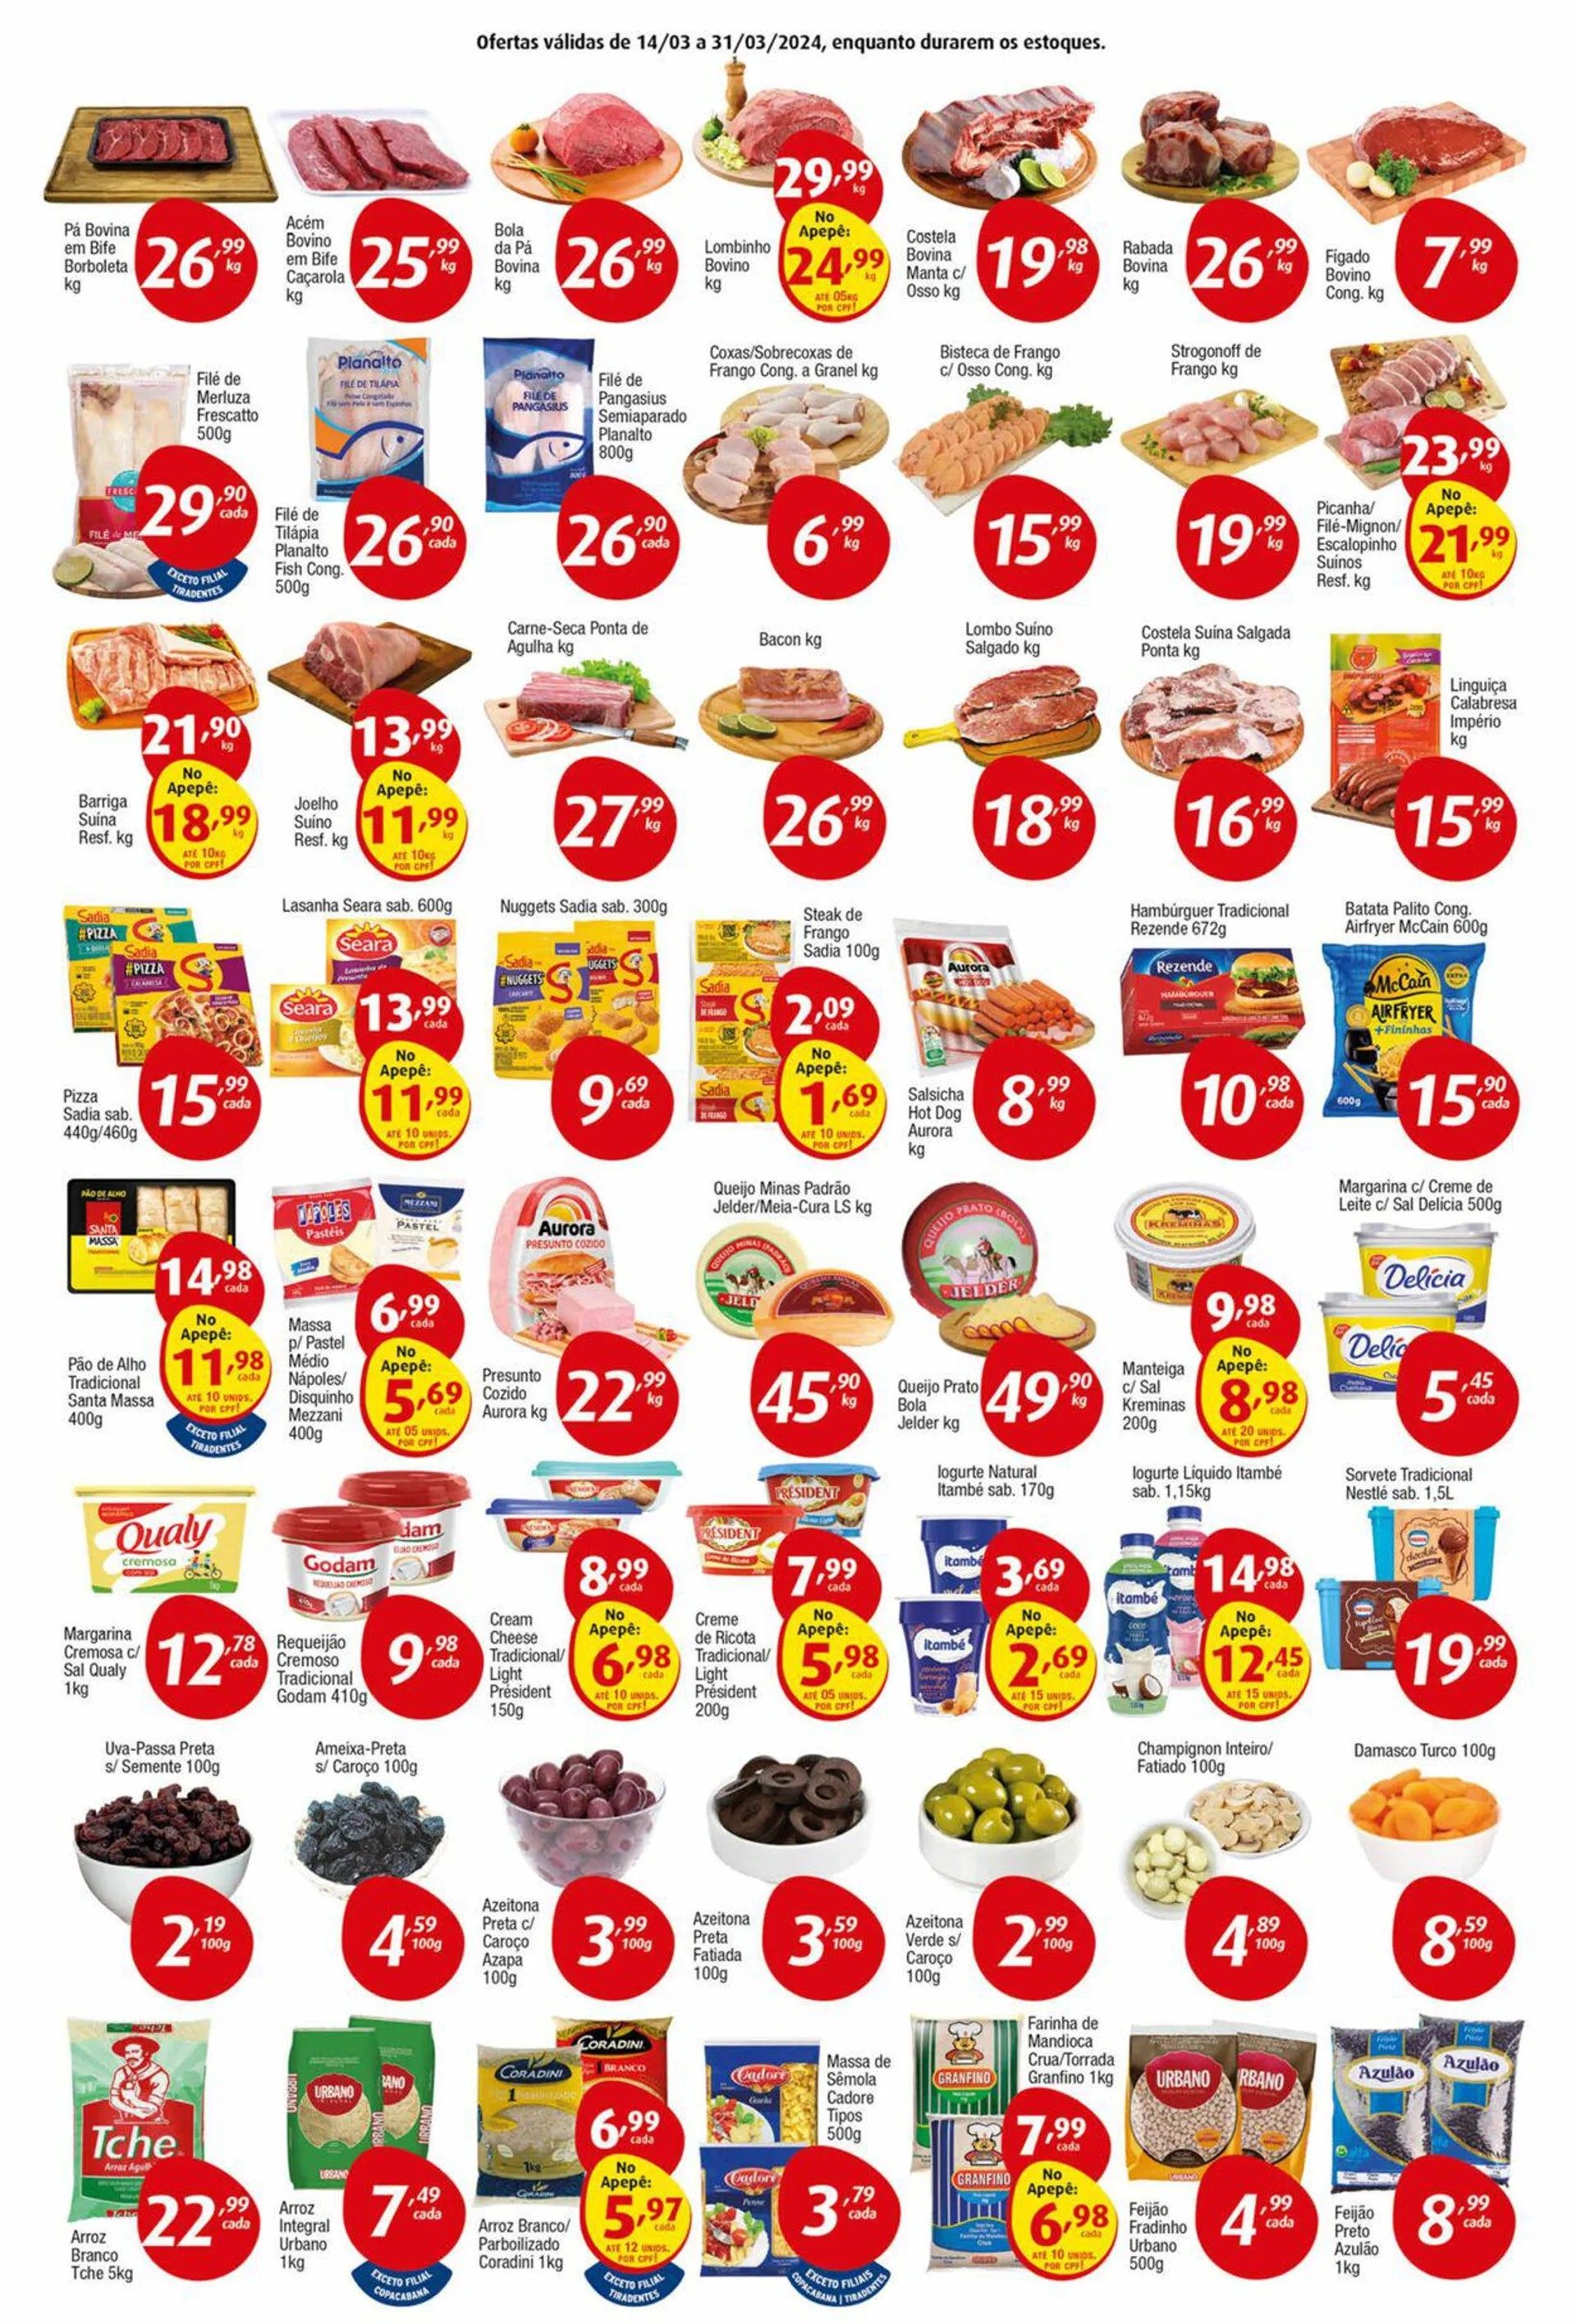 Encarte de Inter Supermercados 14 de março até 31 de março 2024 - Pagina 2